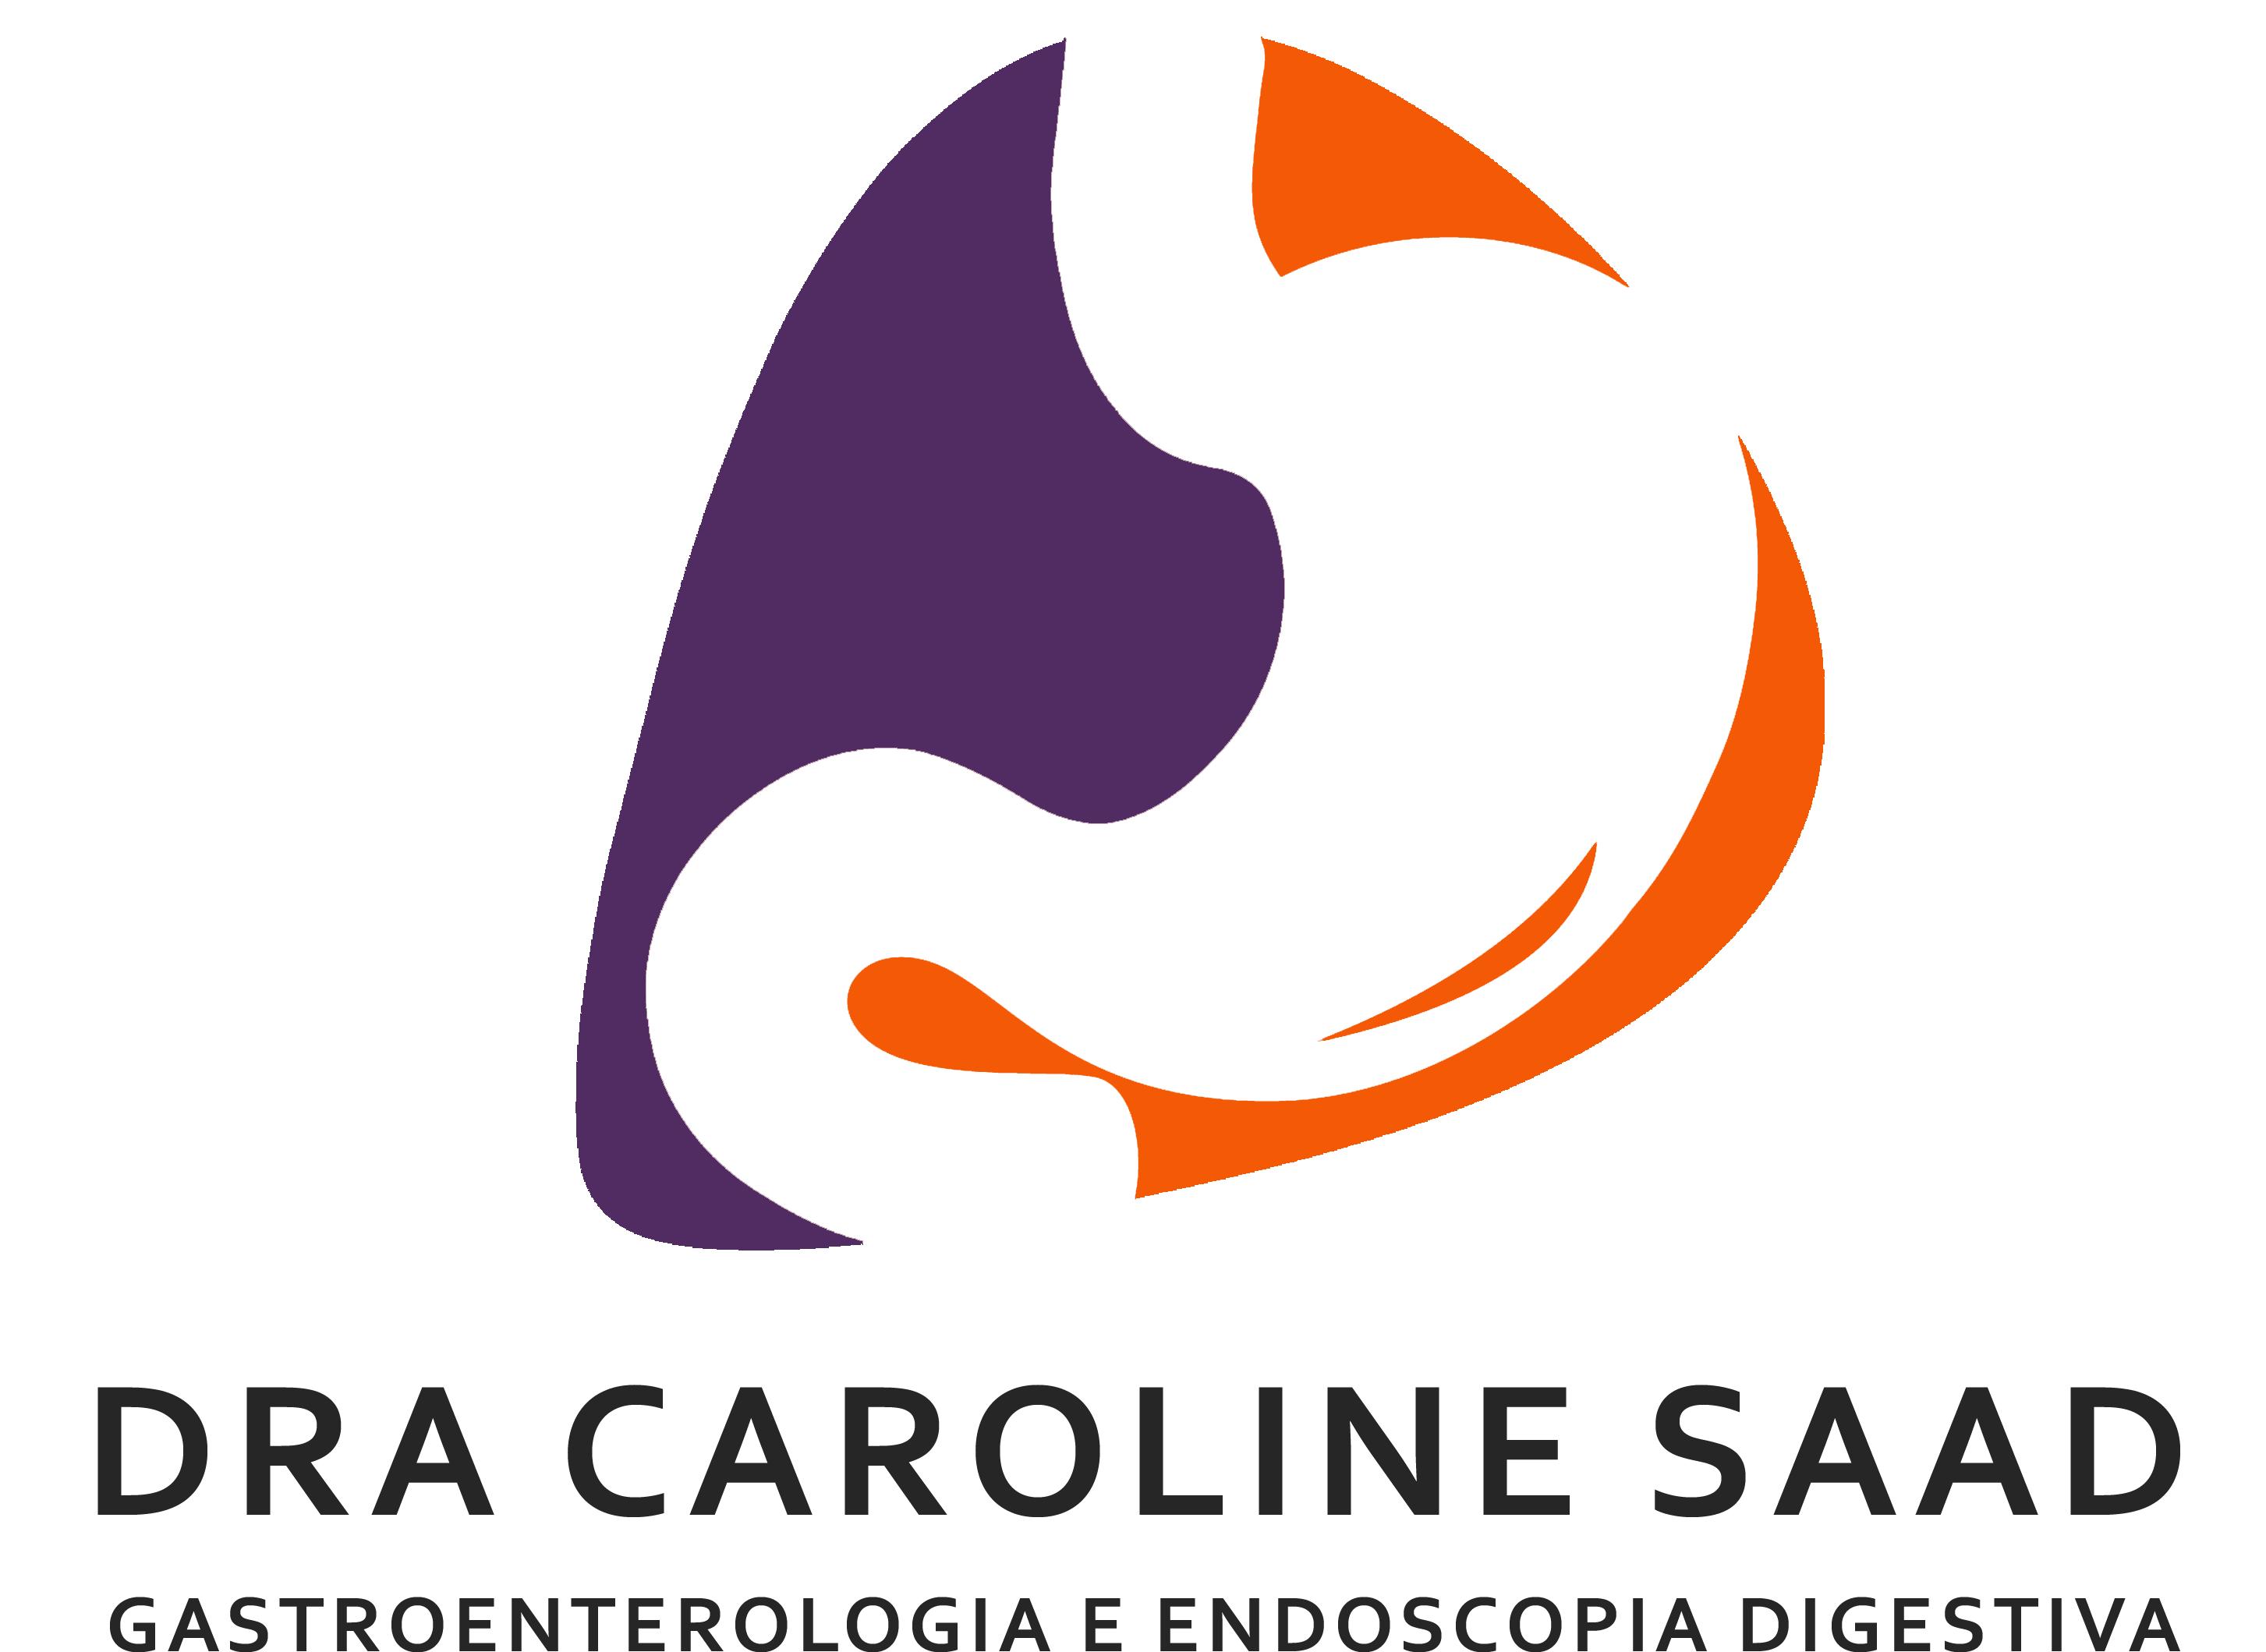 Dra. Caroline Saad